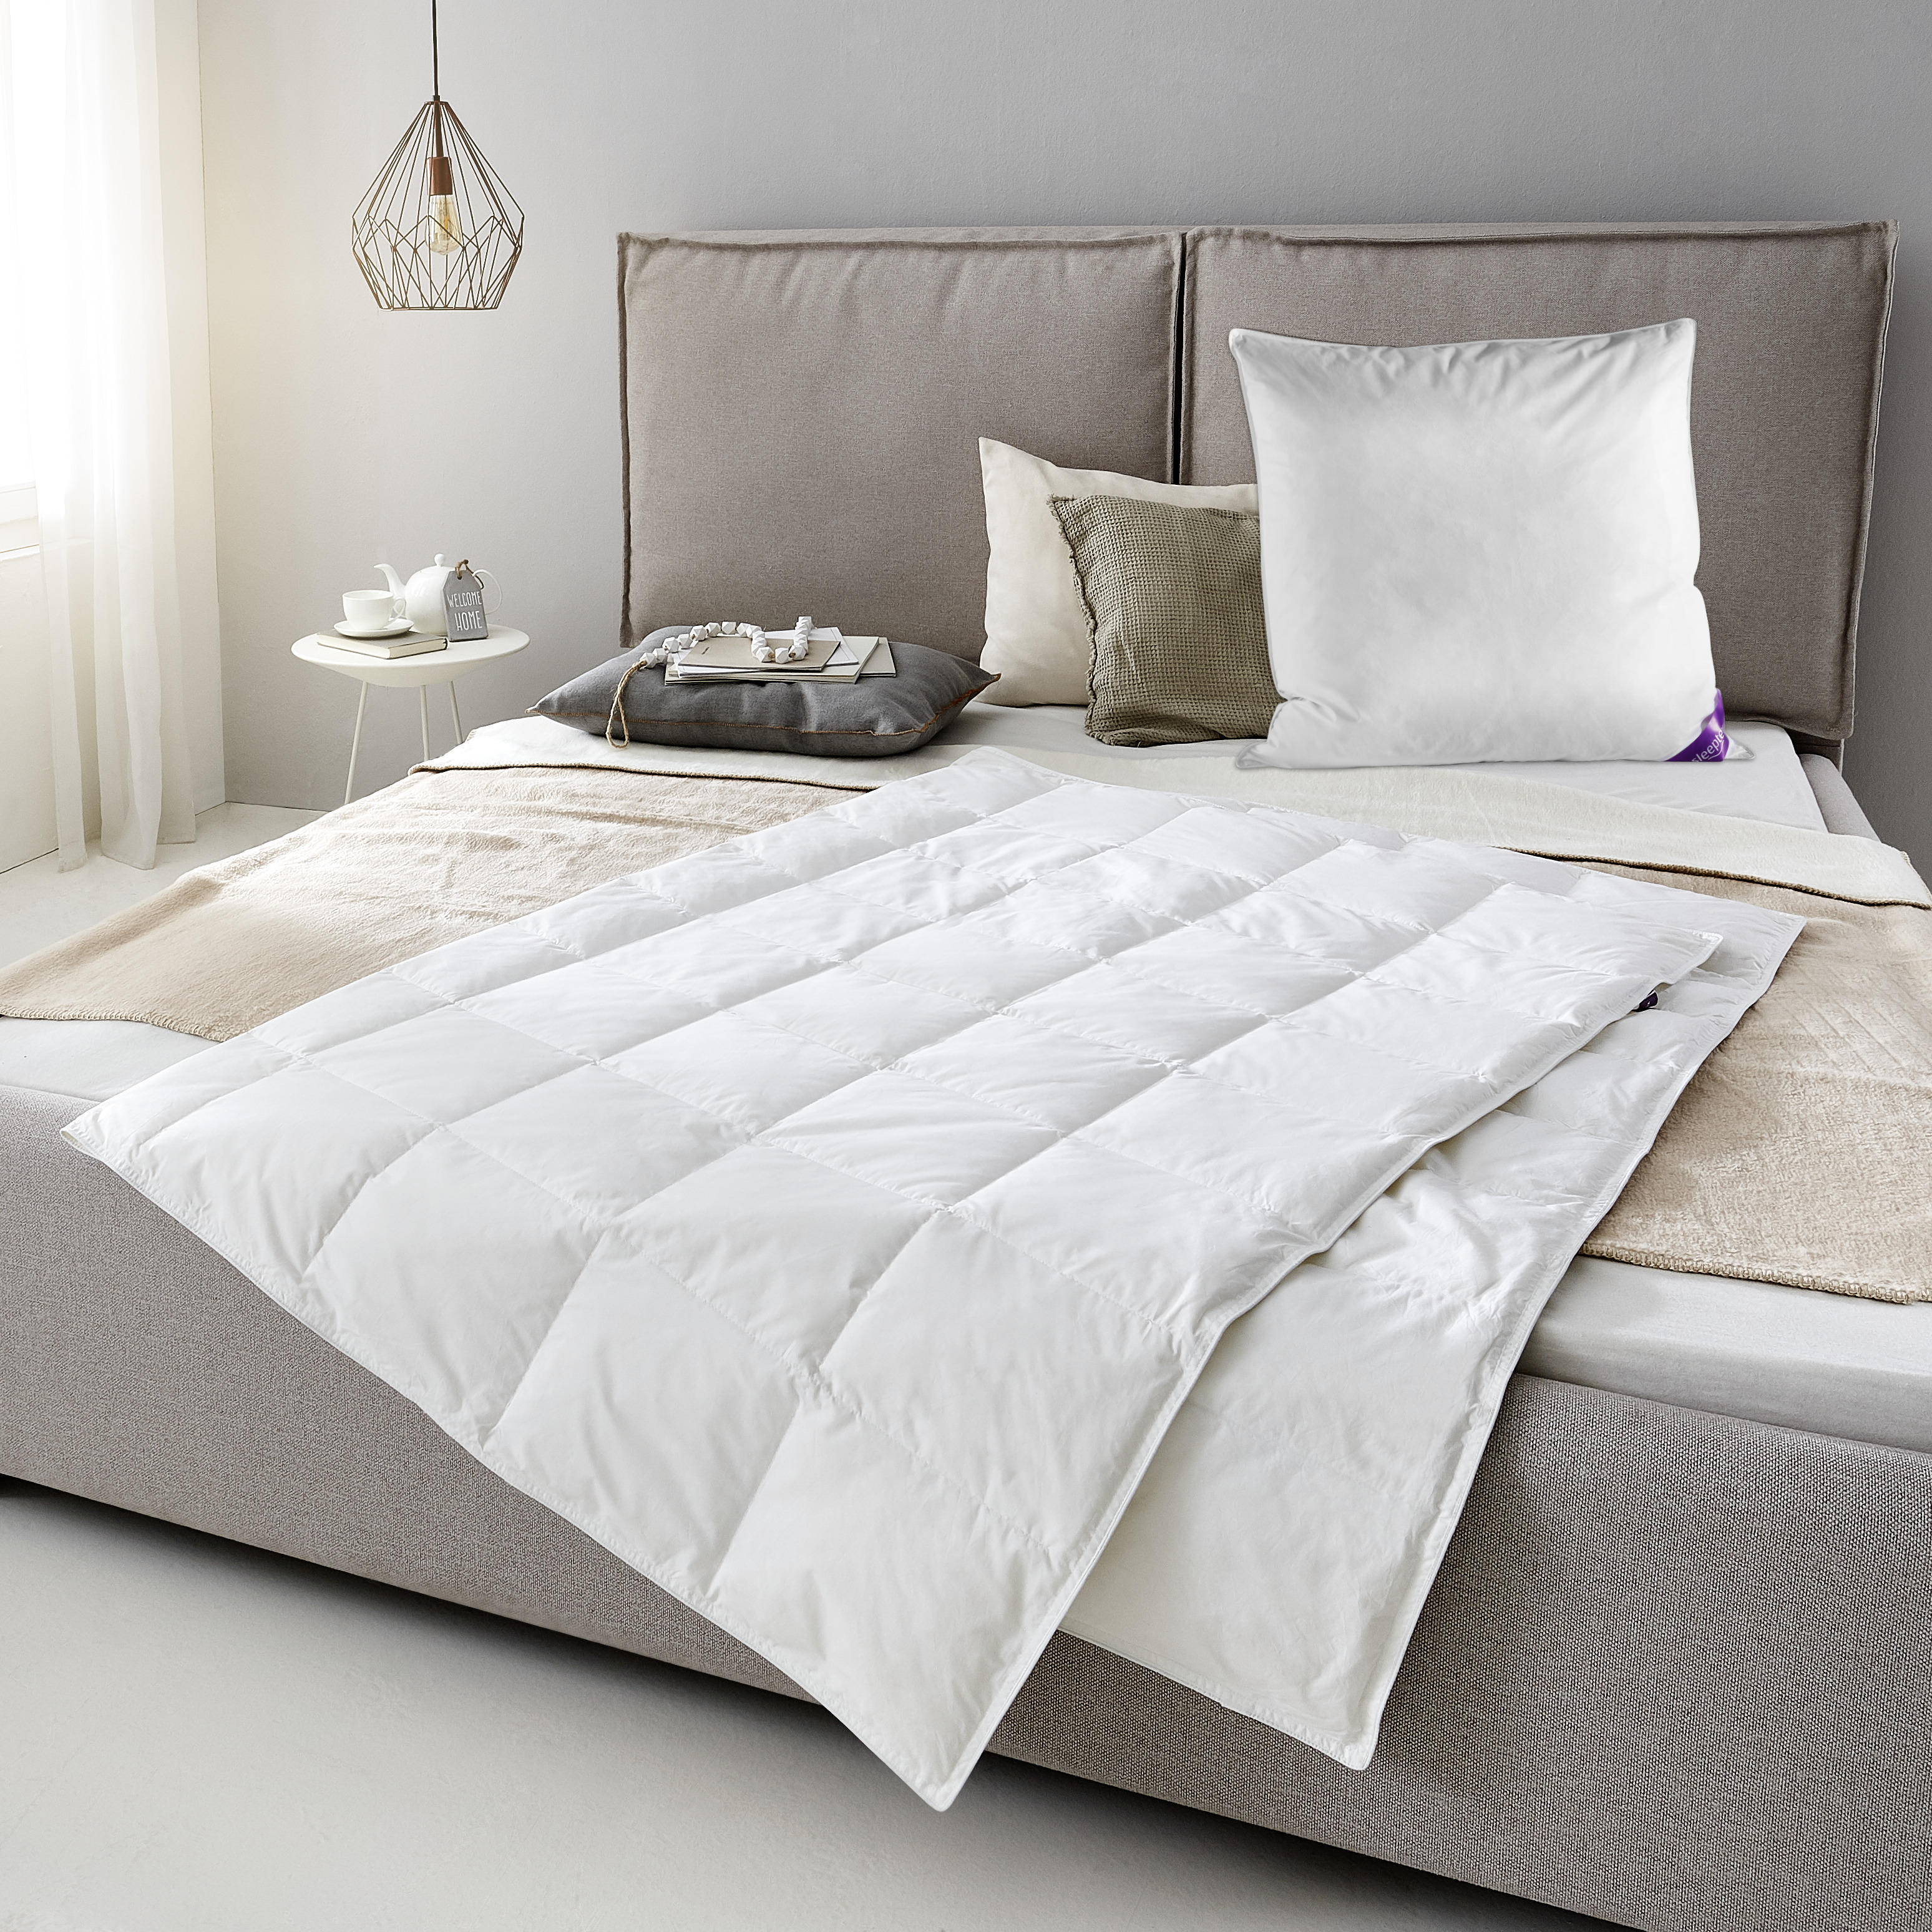 SOMMERBETT  Monashee  135/200 cm   - Weiß, KONVENTIONELL, Naturmaterialien/Textil (135/200cm) - Sleeptex